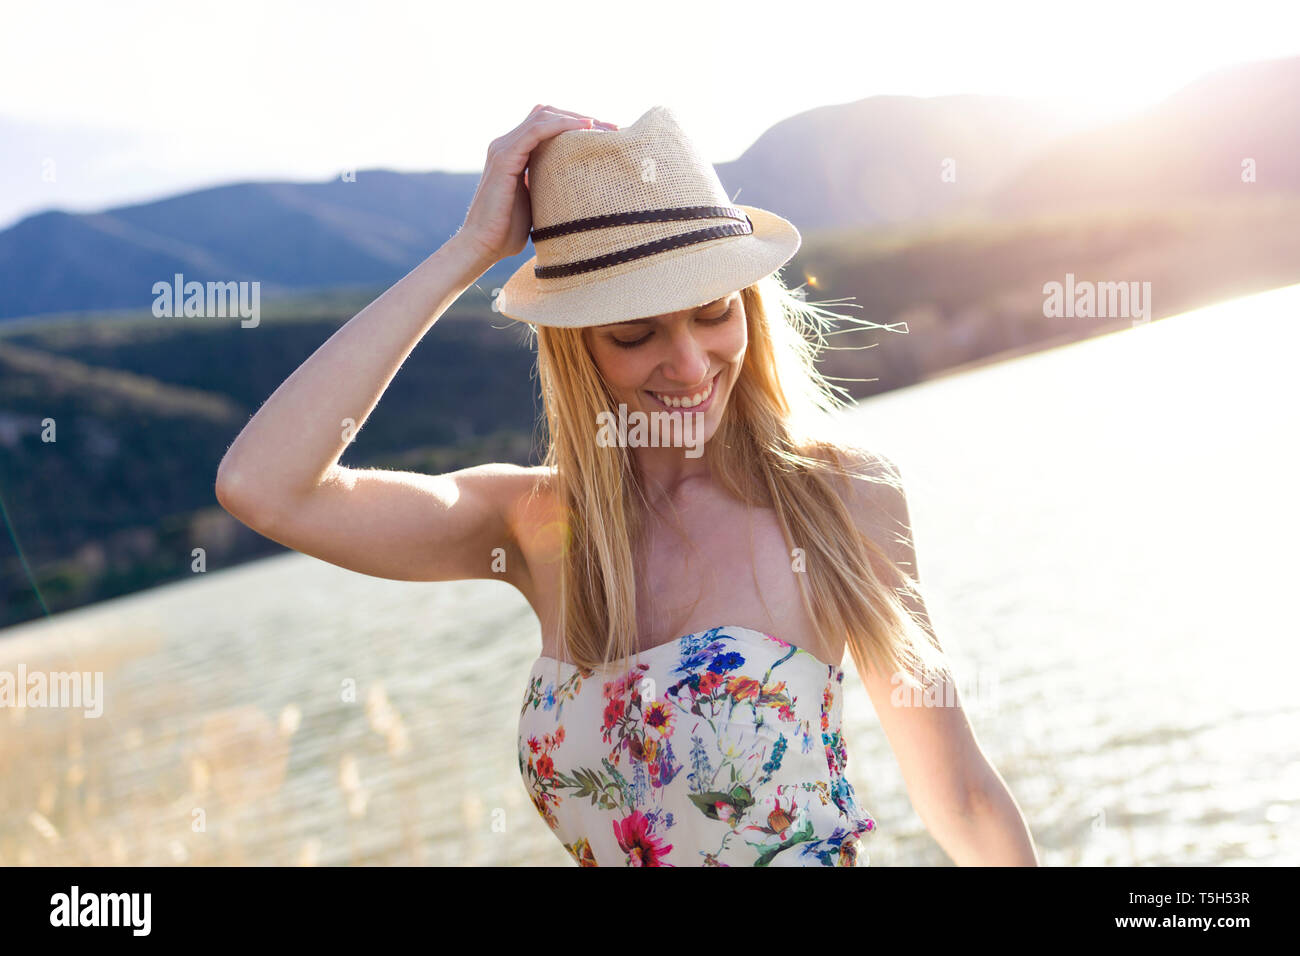 Sorridente giovane donna indossa estate hat e top con disegno floreale di fronte al lago Foto Stock